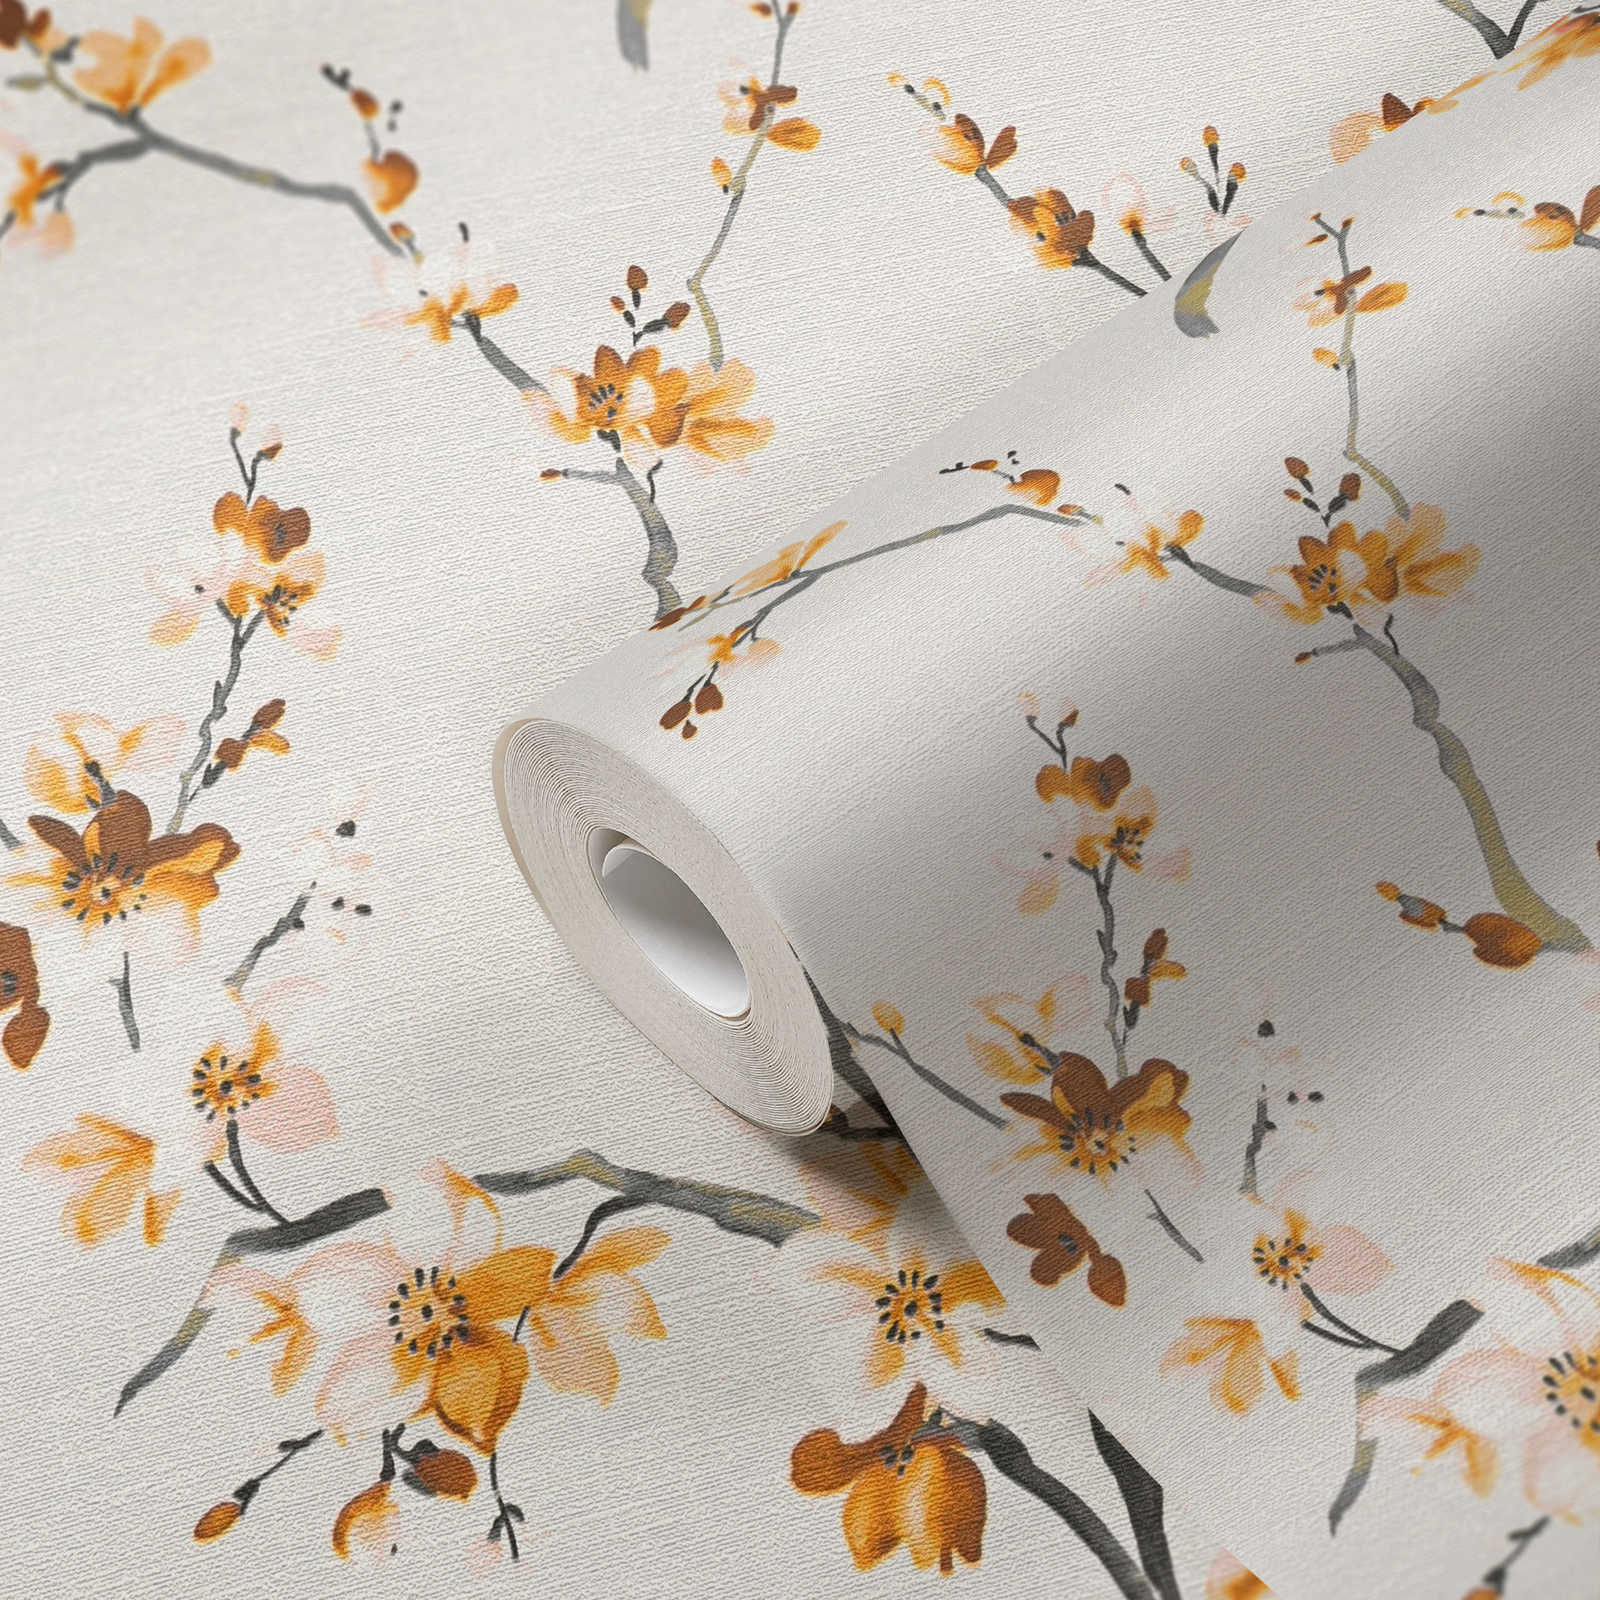             Papier peint fleuri jaune moutarde Motifs floraux dans le style aquarelle
        